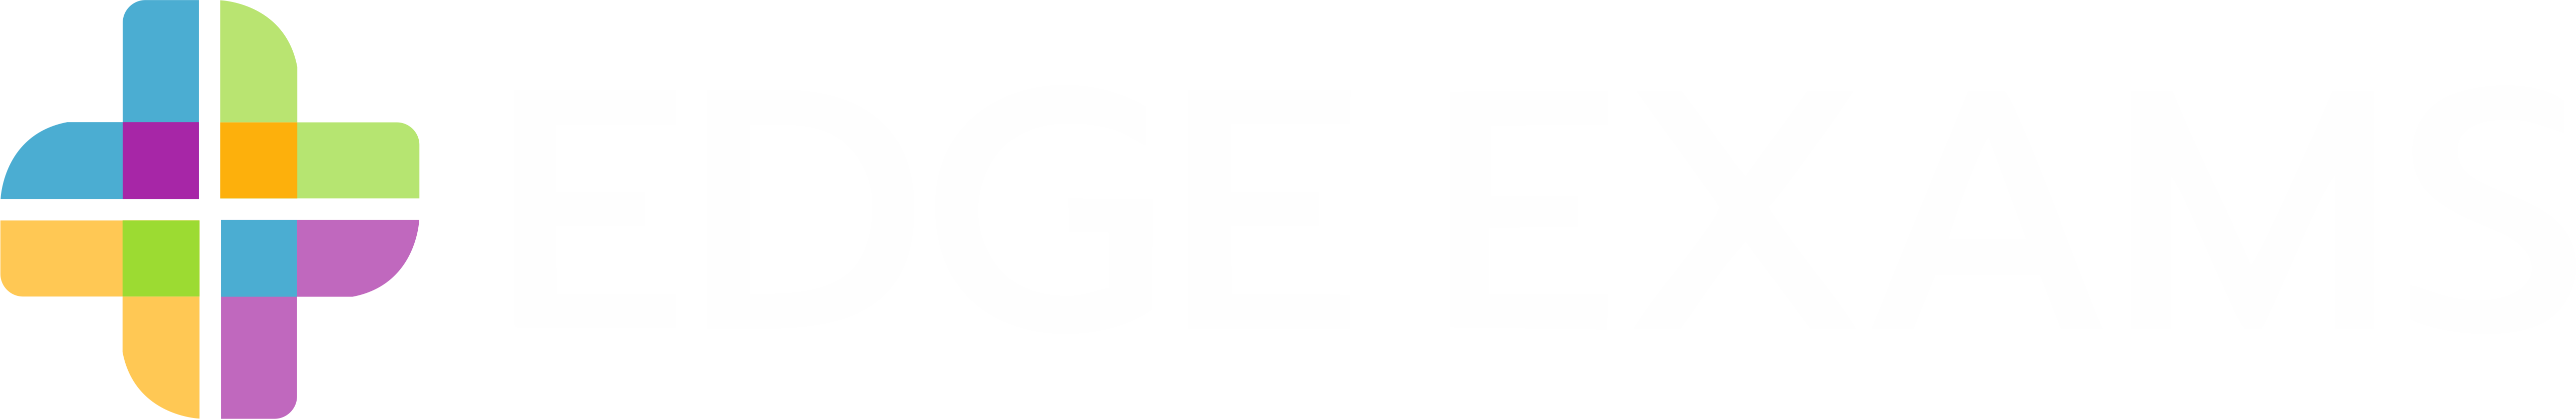 Edge Exams Logo